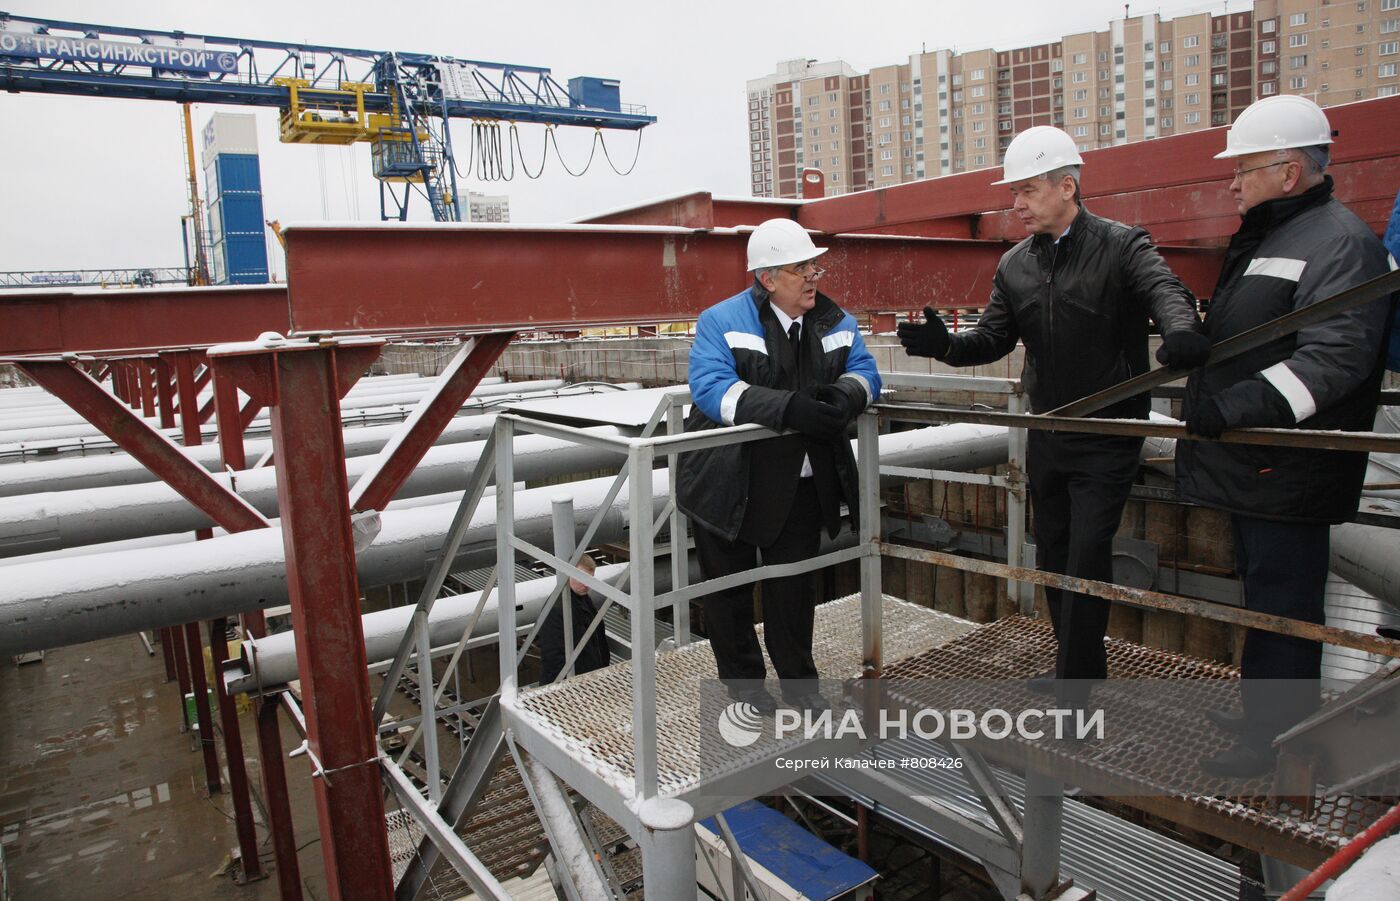 Сергей Собянин посетил строящуюся станцию метро "Новокосино"